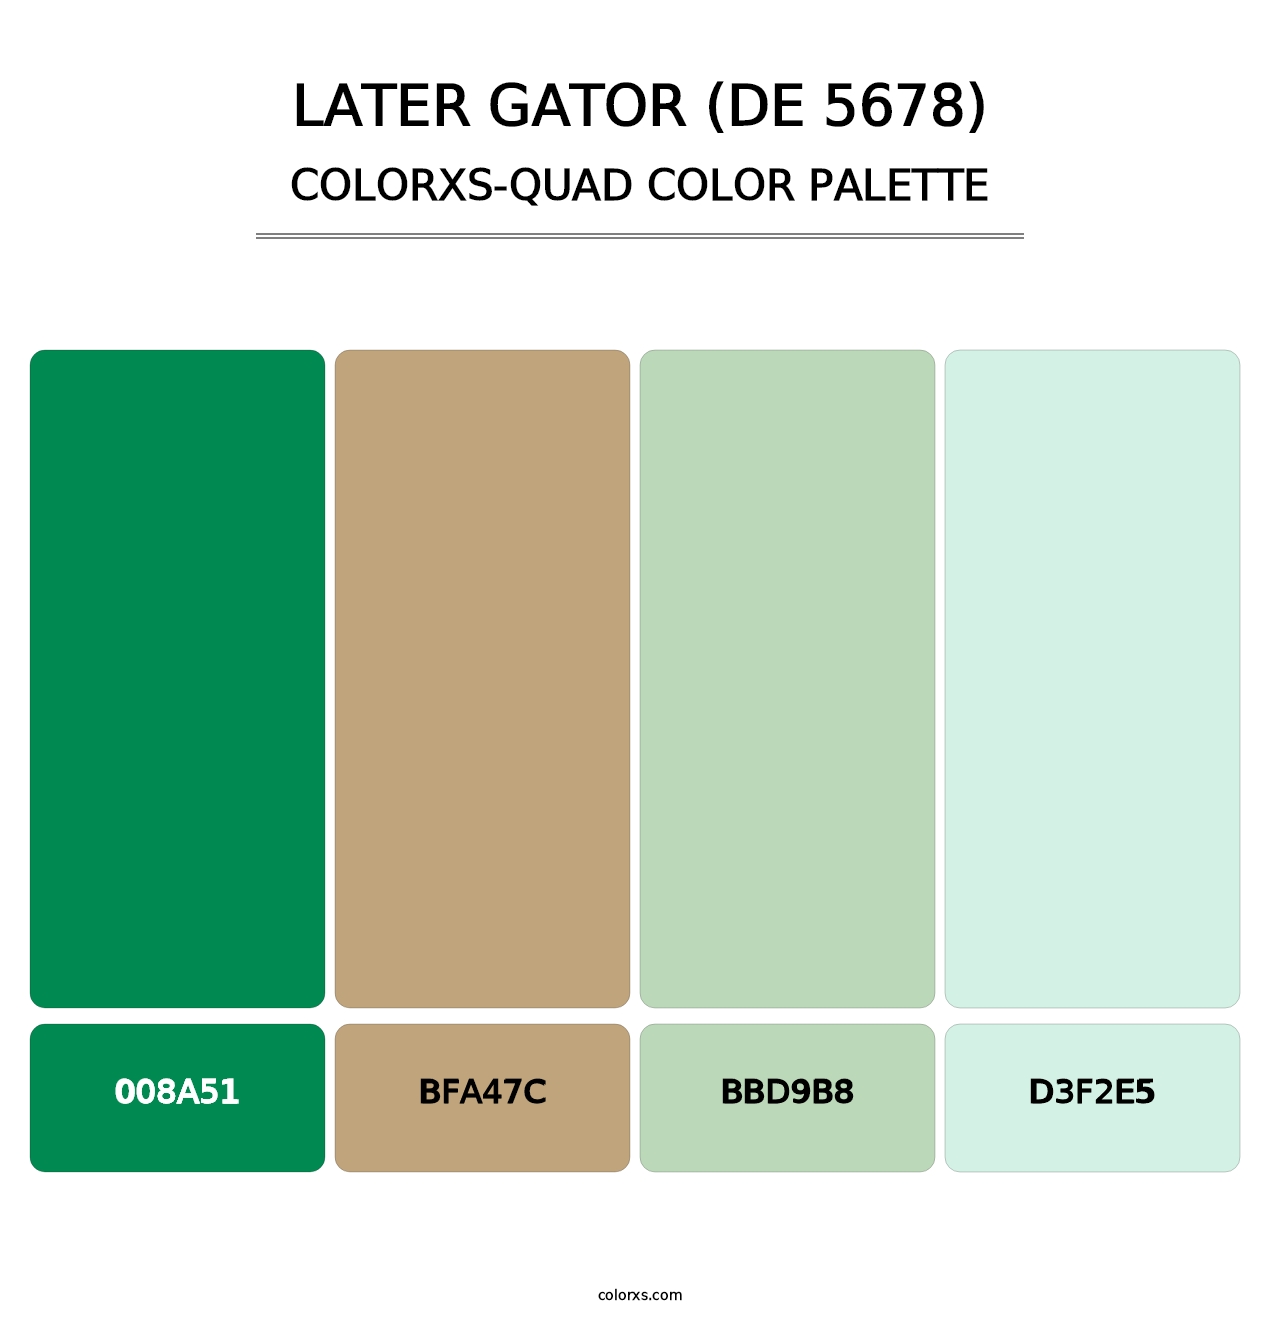 Later Gator (DE 5678) - Colorxs Quad Palette